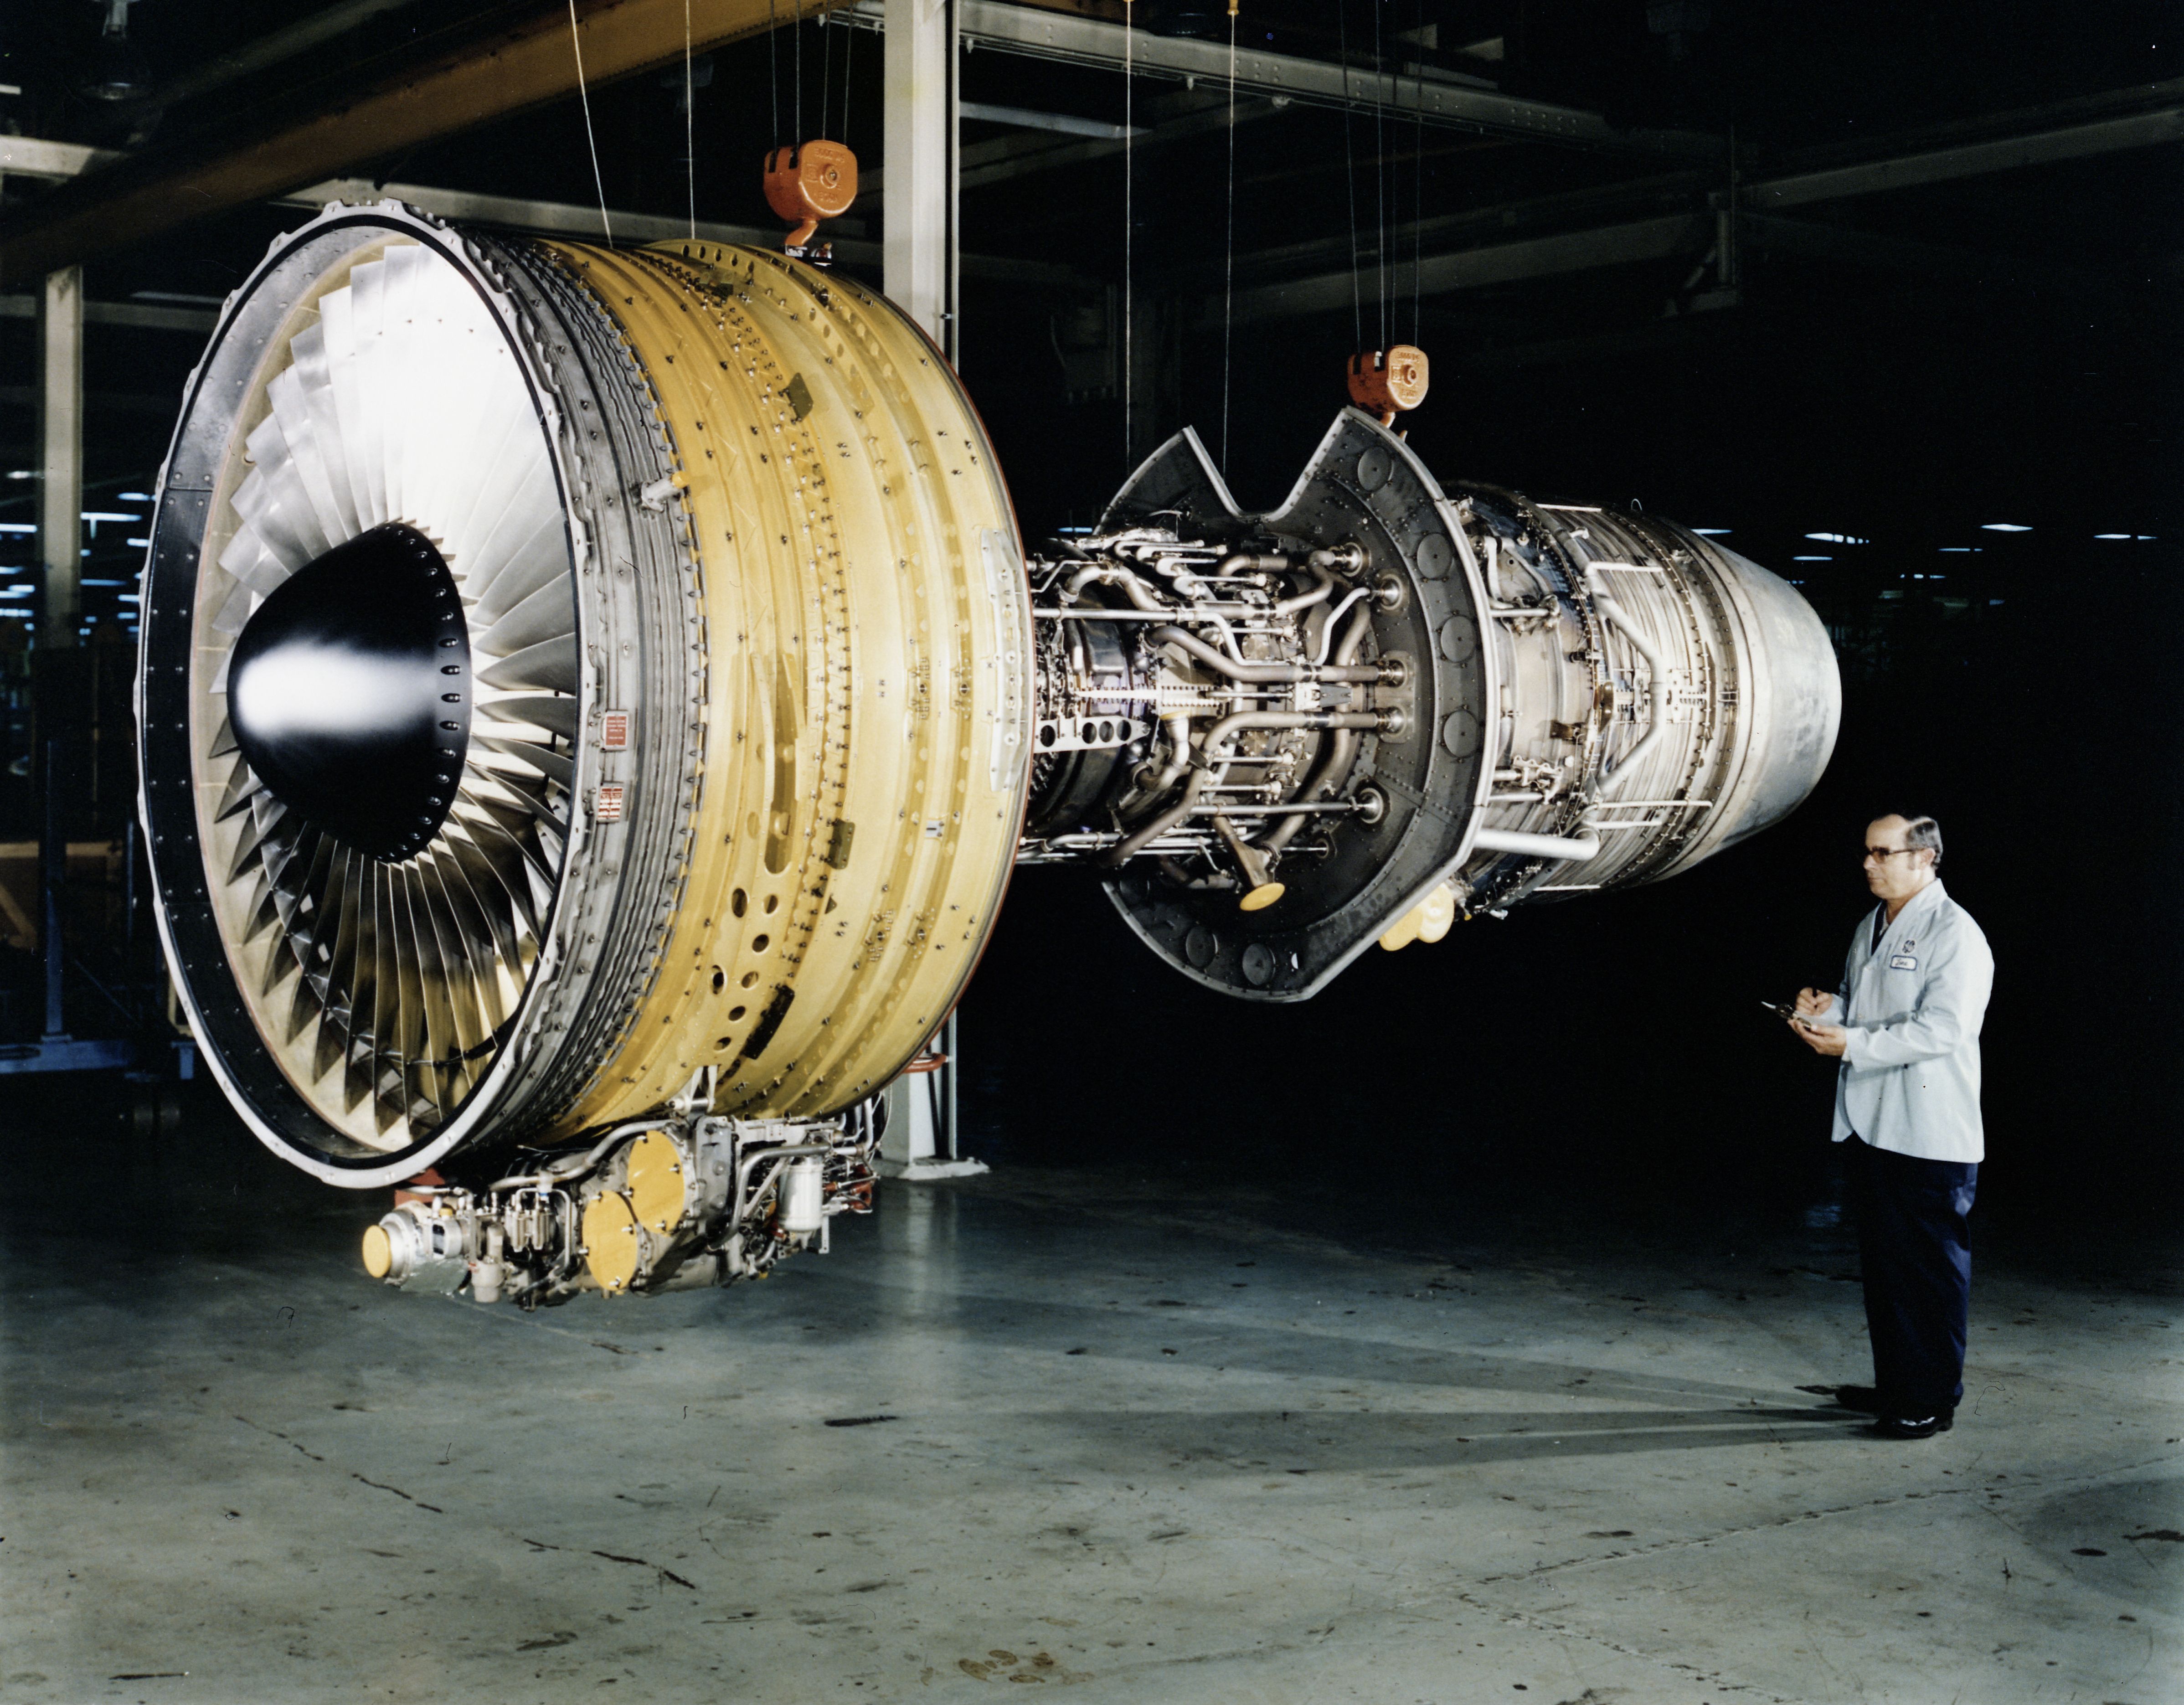 cf-6 turbofan